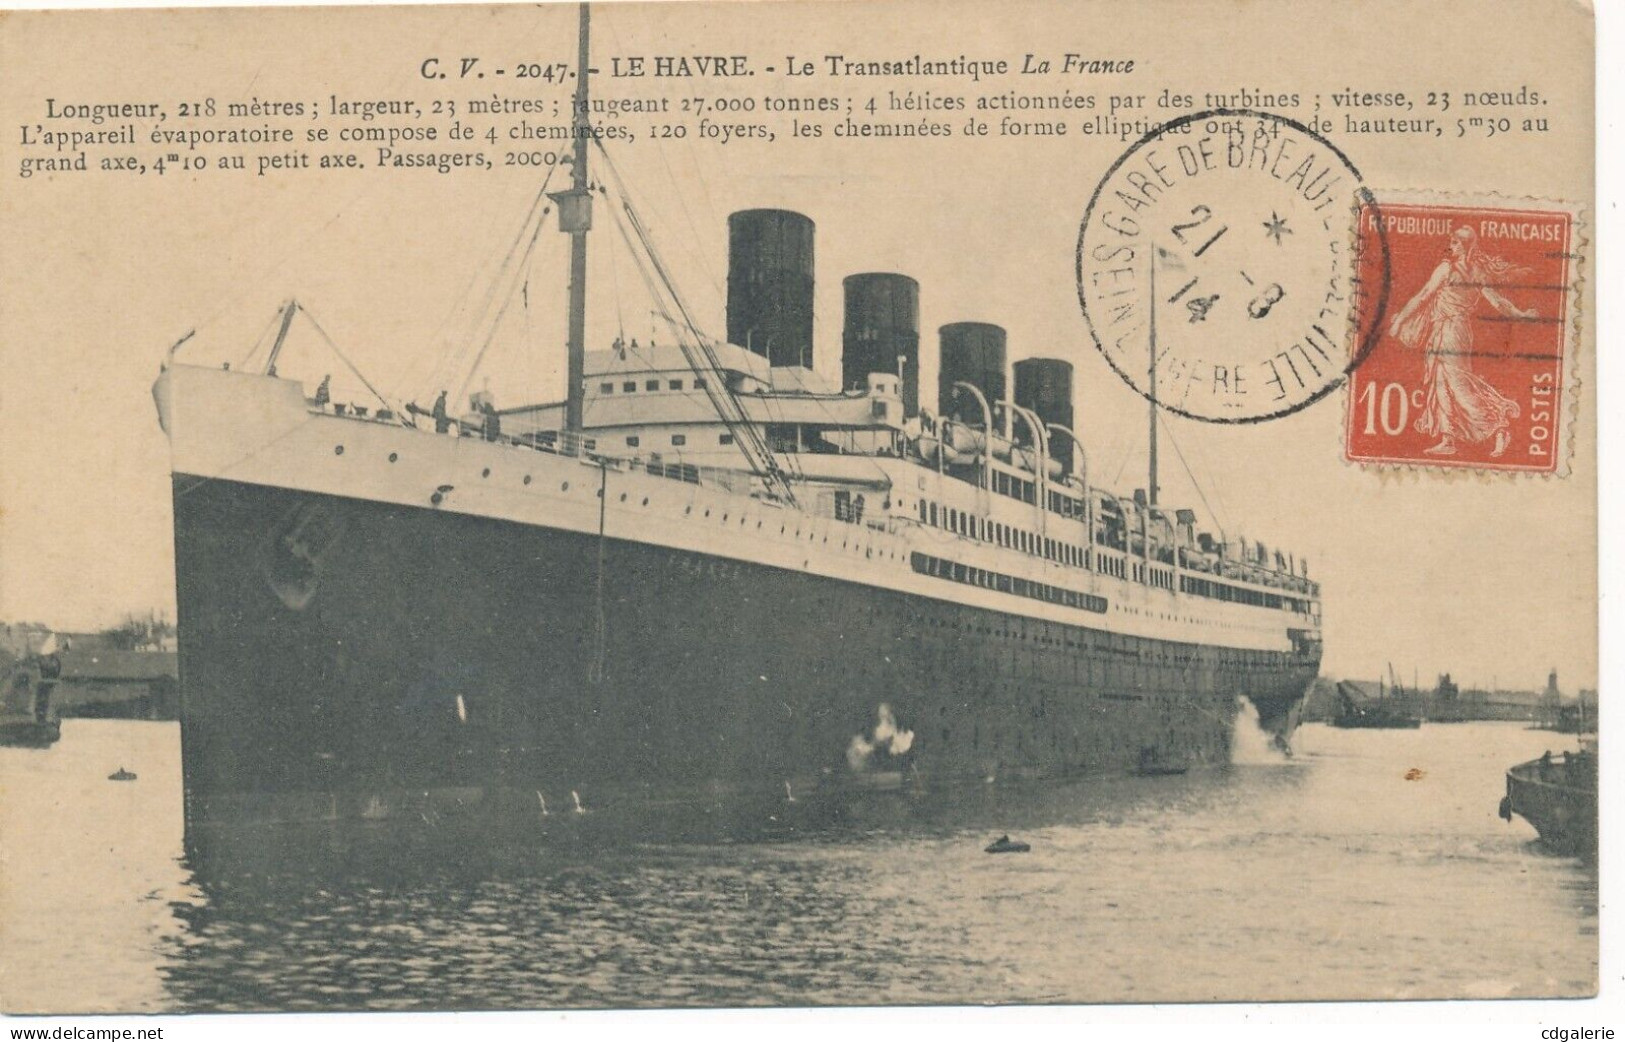 Le HAVRE 11 cartes postales imprimées 2 en couleur marques postales plage port navires paquebots